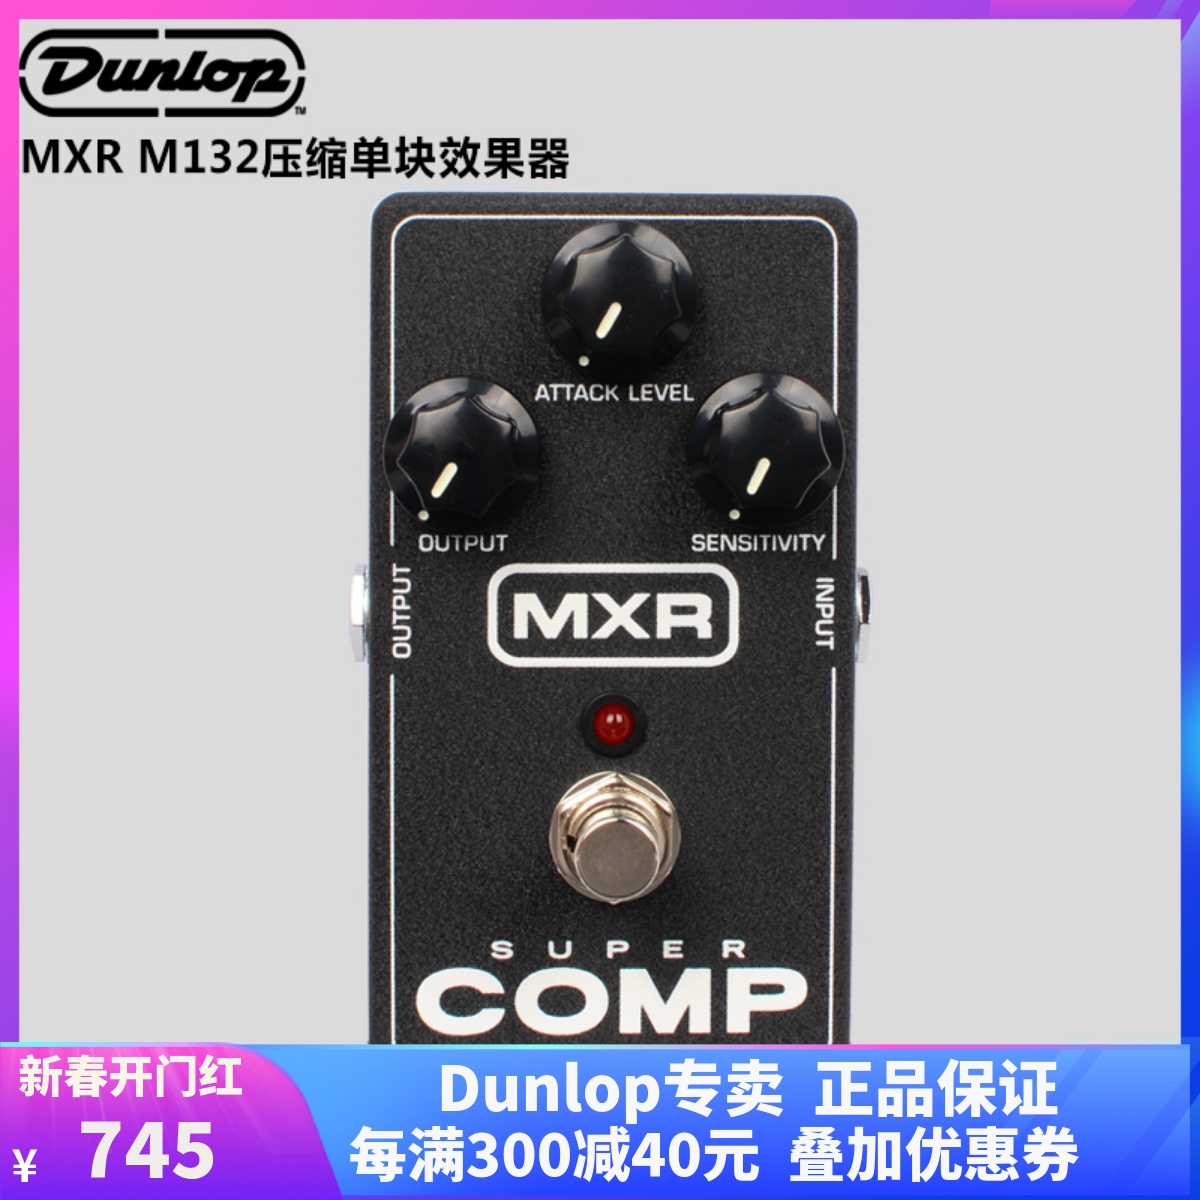 アメリカンダンロップ シングルブロックエフェクター MXR M132 SuperComp エレキギター ベース ダイナミック スーパーコンプレッション